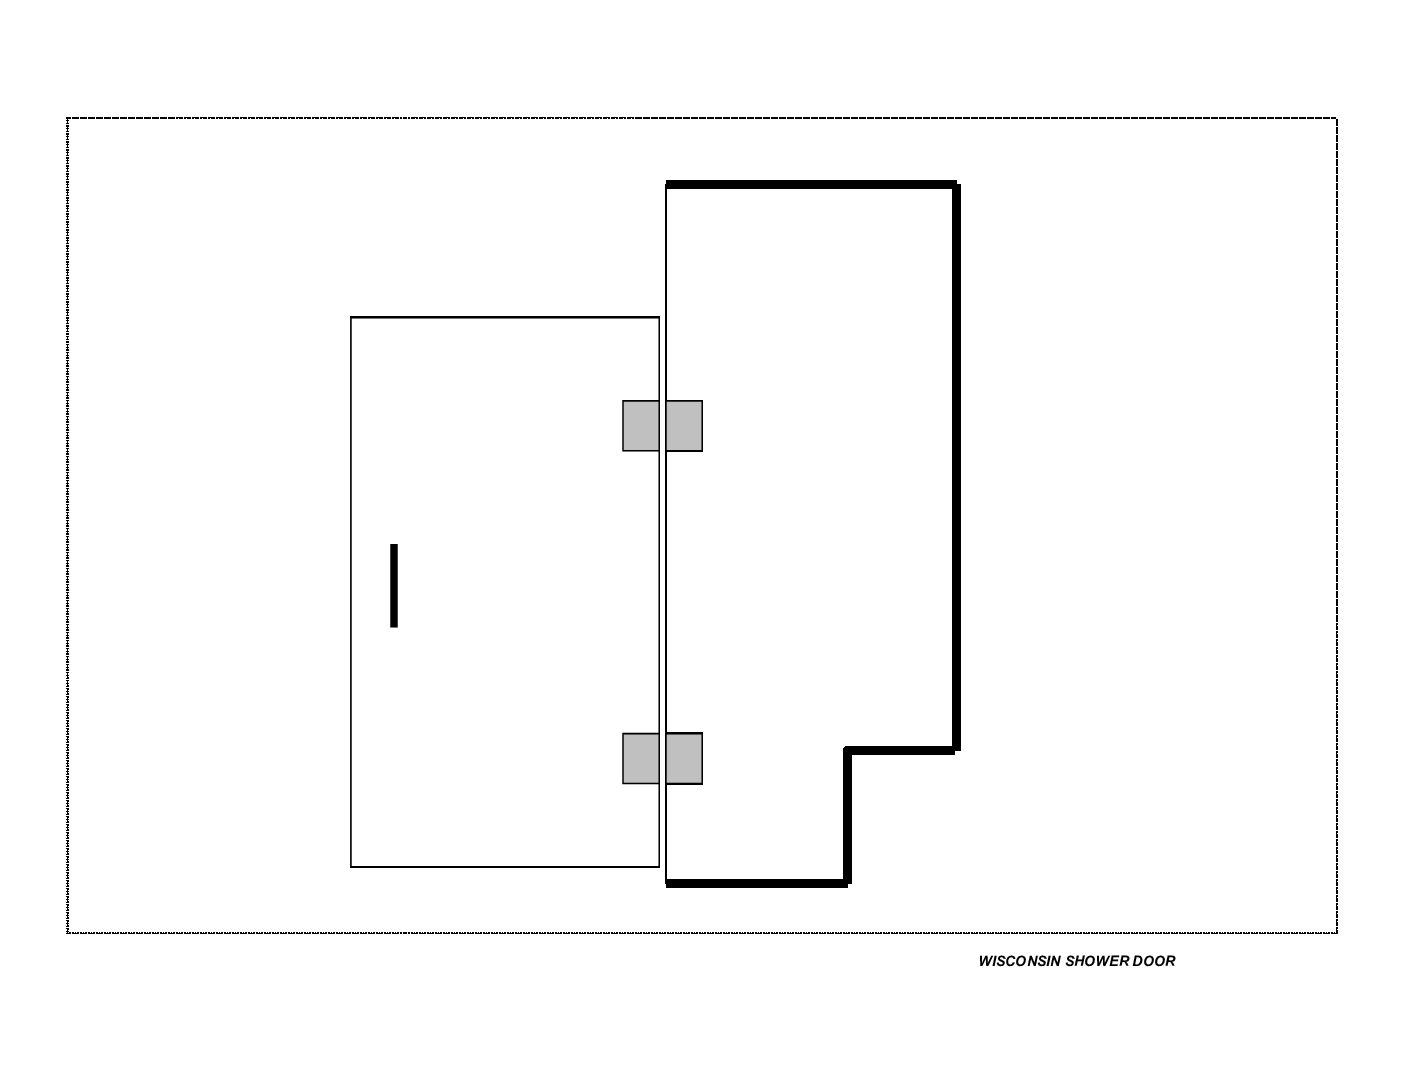 Shower door enclosure Door (HR) and Notched Panel-to-Ceiling